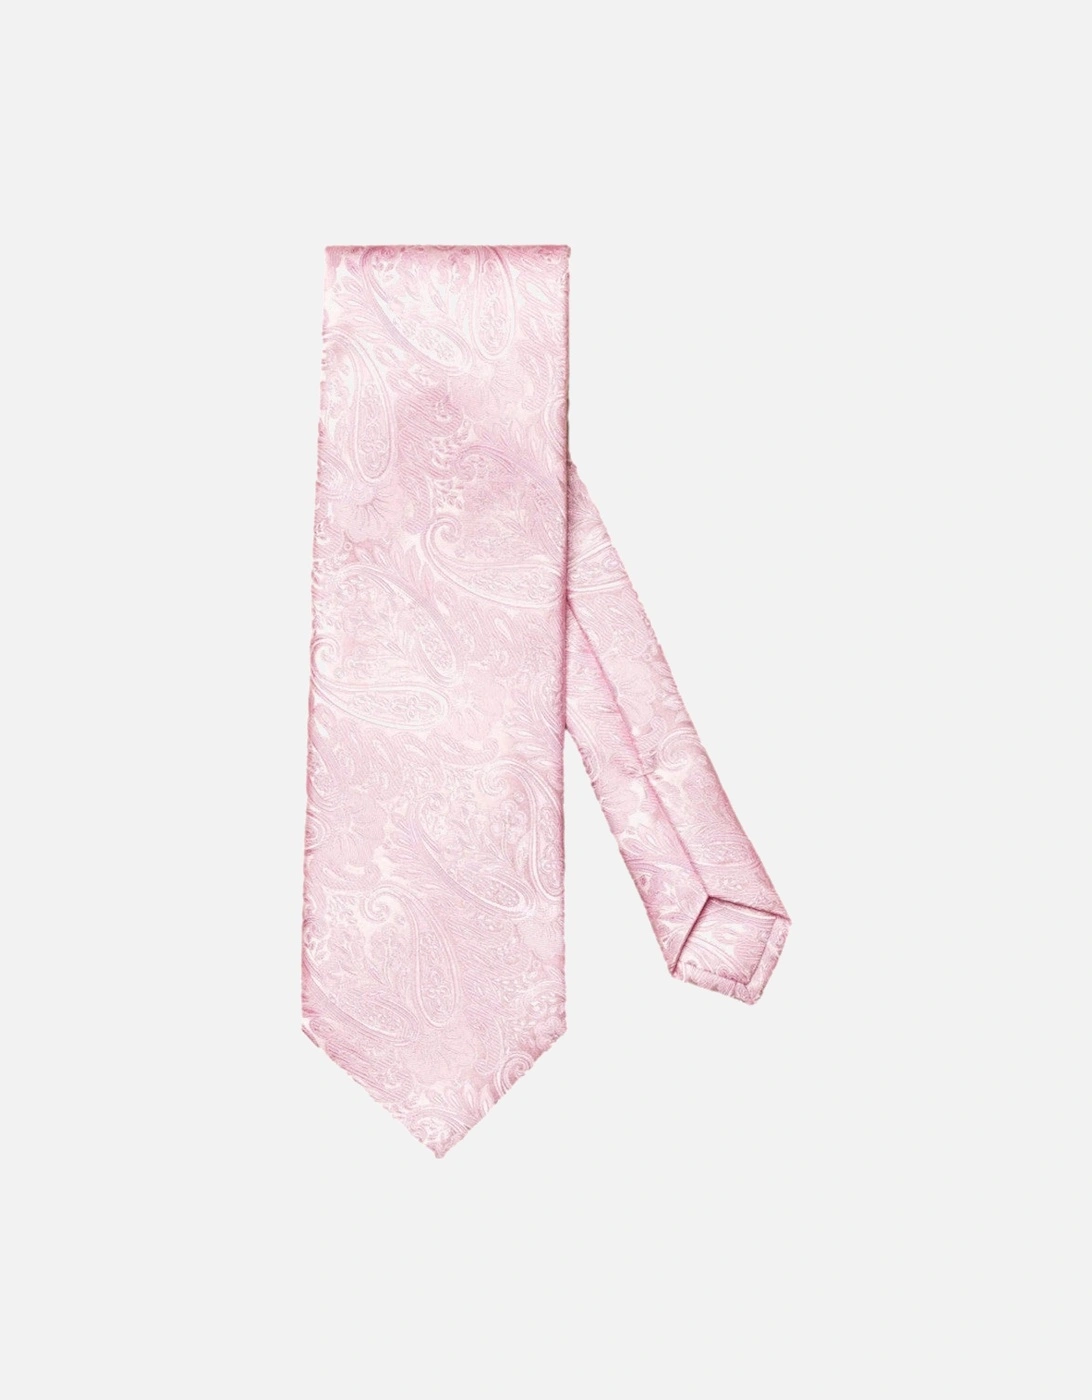 Jacquard Paisley Silk Tie 53 Pink, 3 of 2